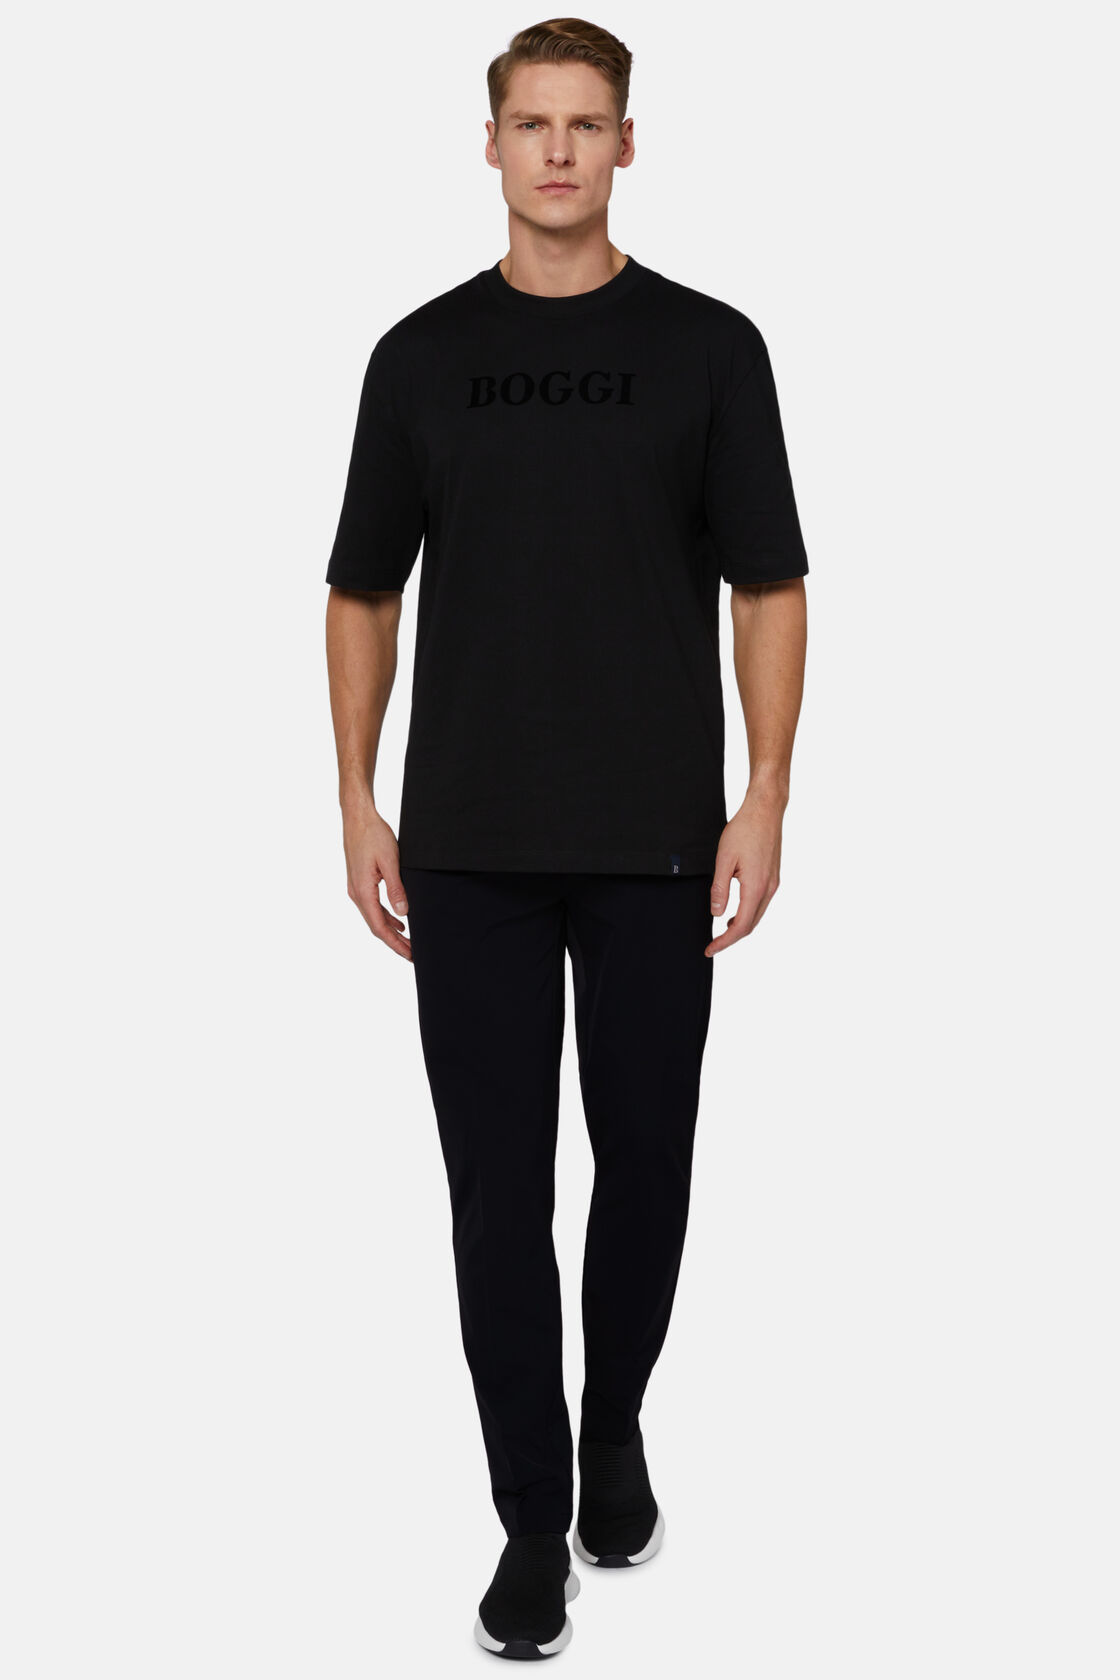 Βαμβακερό μπλουζάκι, Black, hi-res